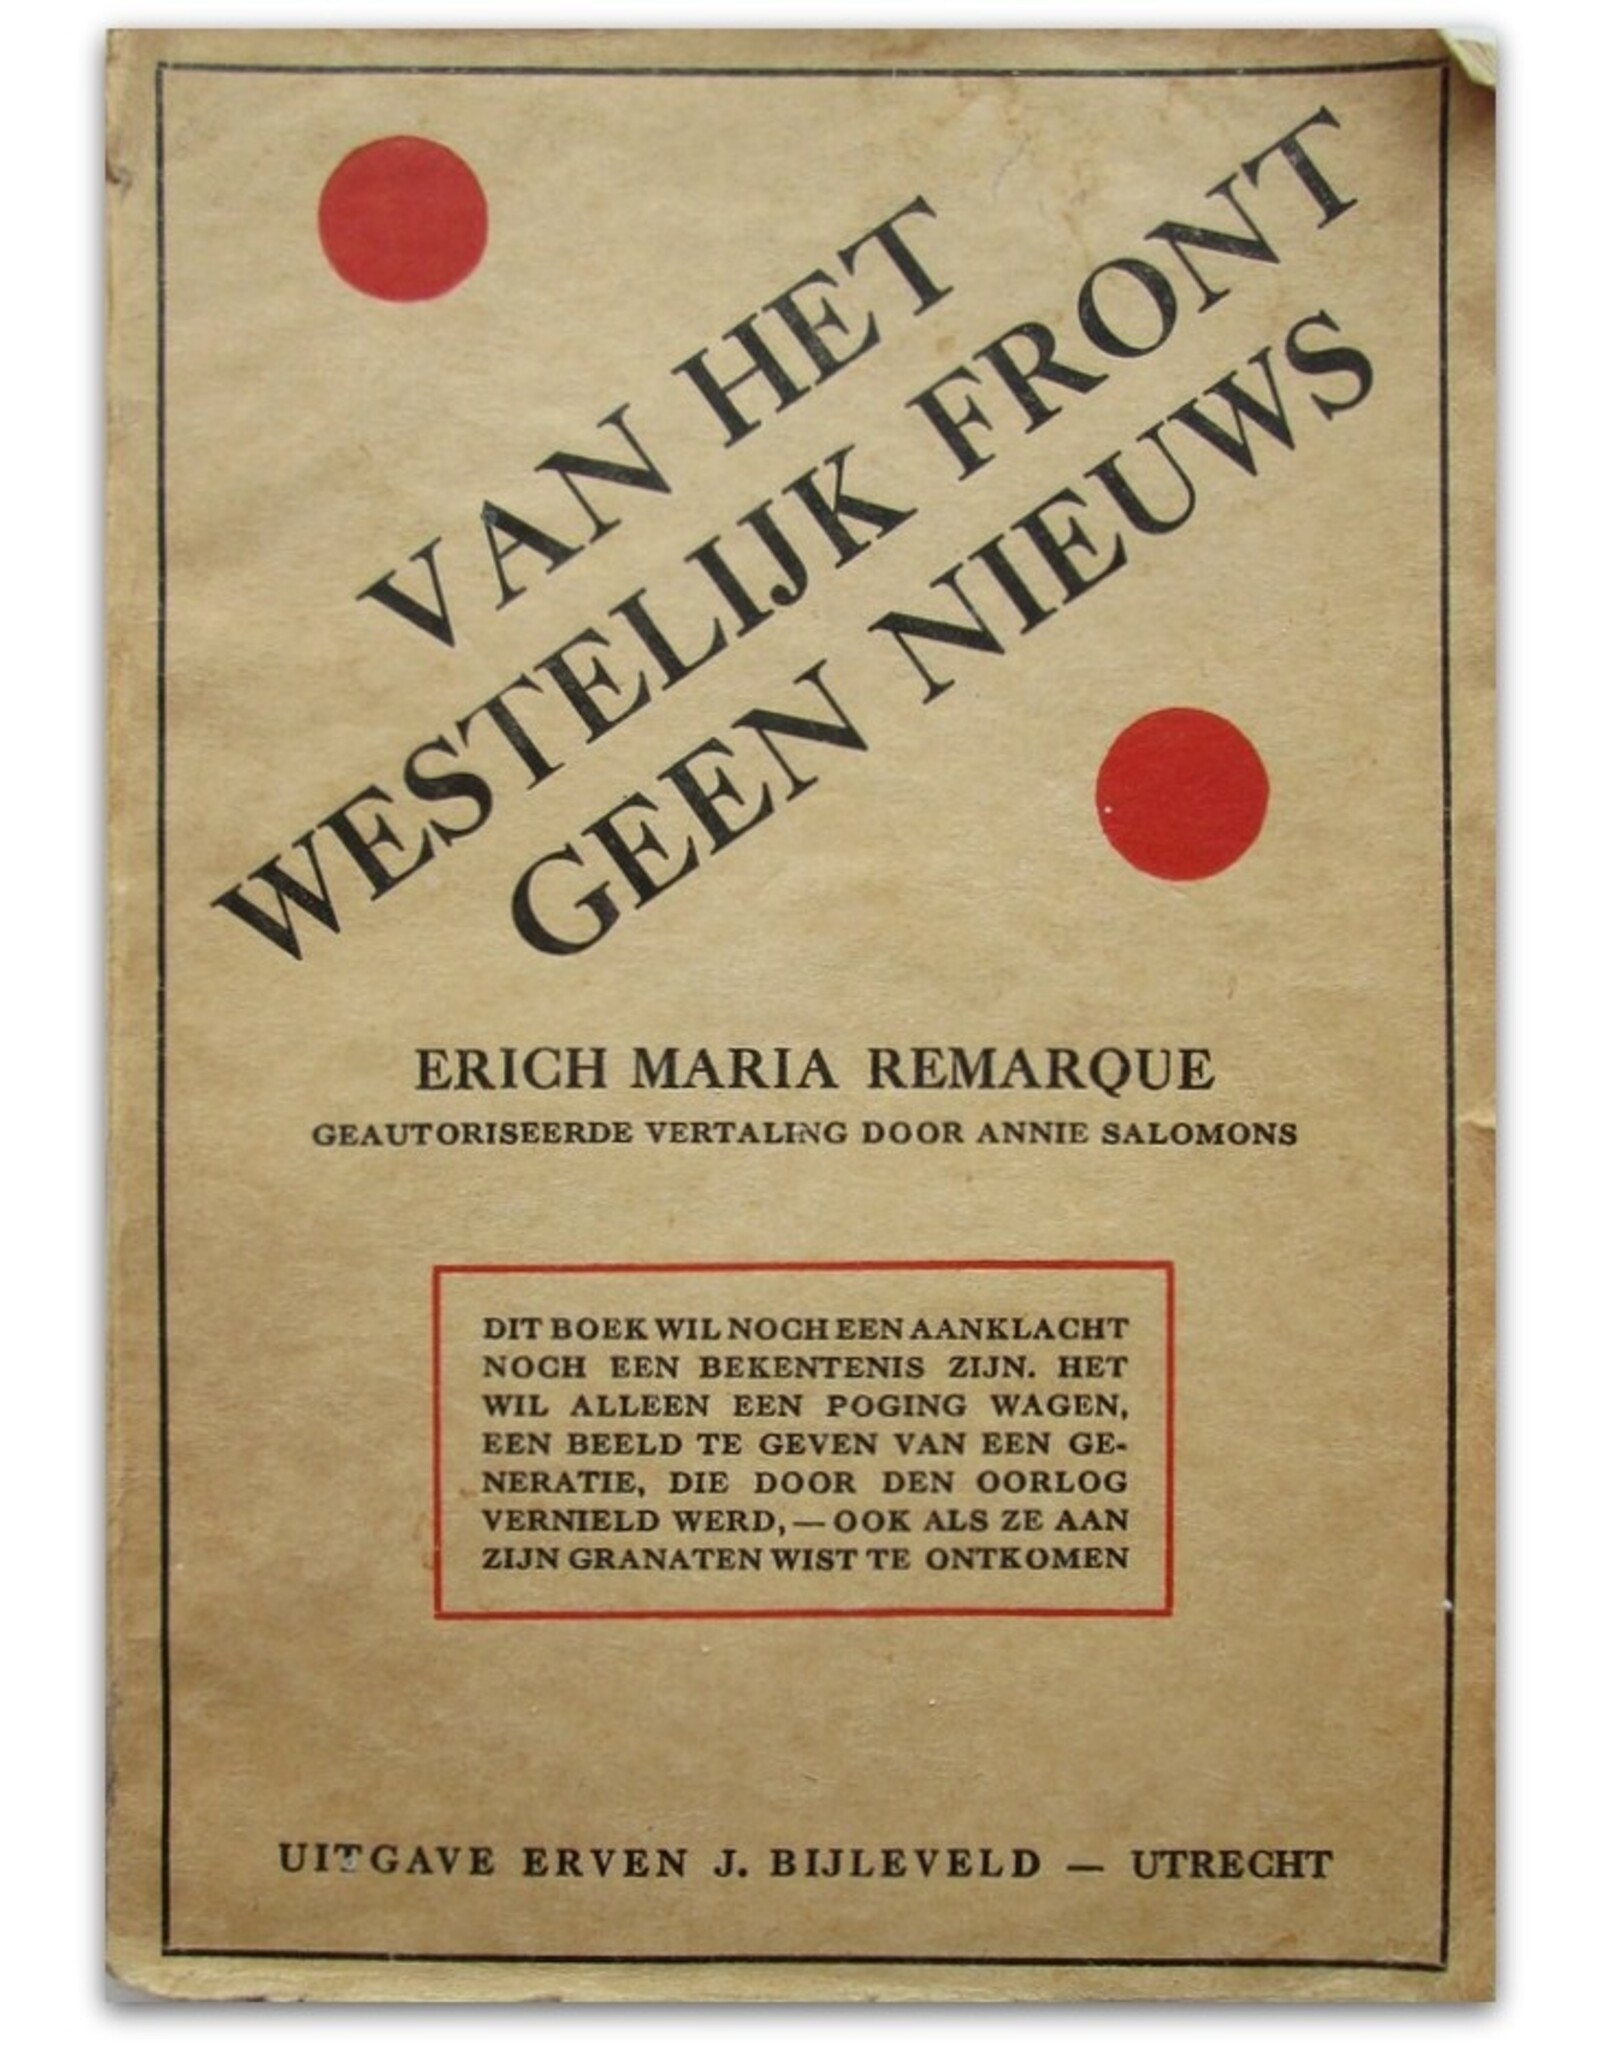 Erich Maria Remarque - Van het westelijk front geen nieuws. Geautoriseerde vertaling door Annie Salomons